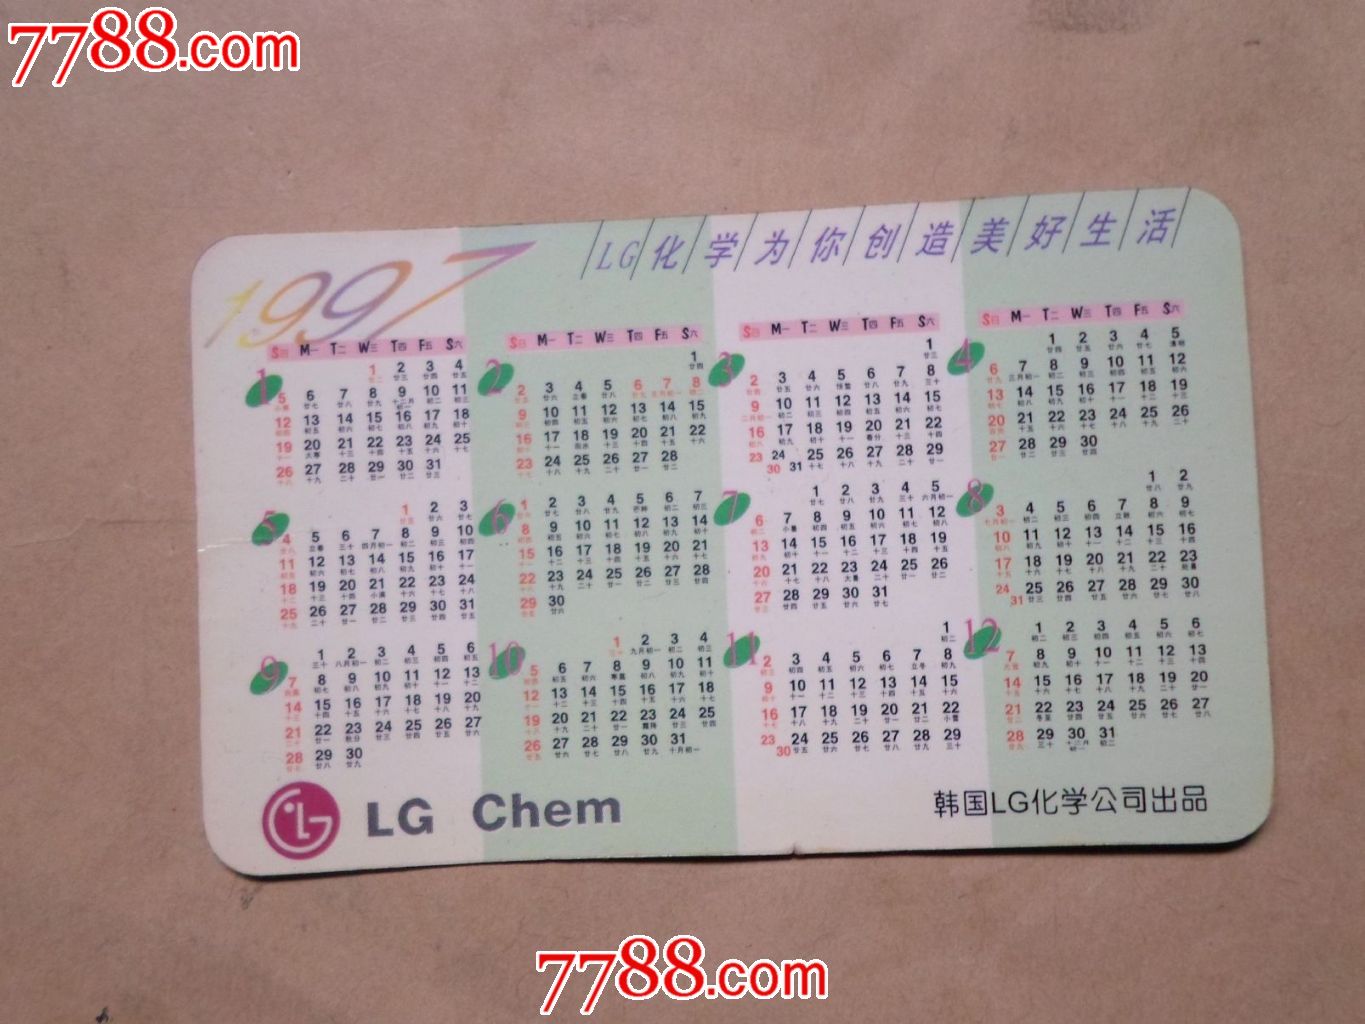 韩国lg化学公司1997年历卡